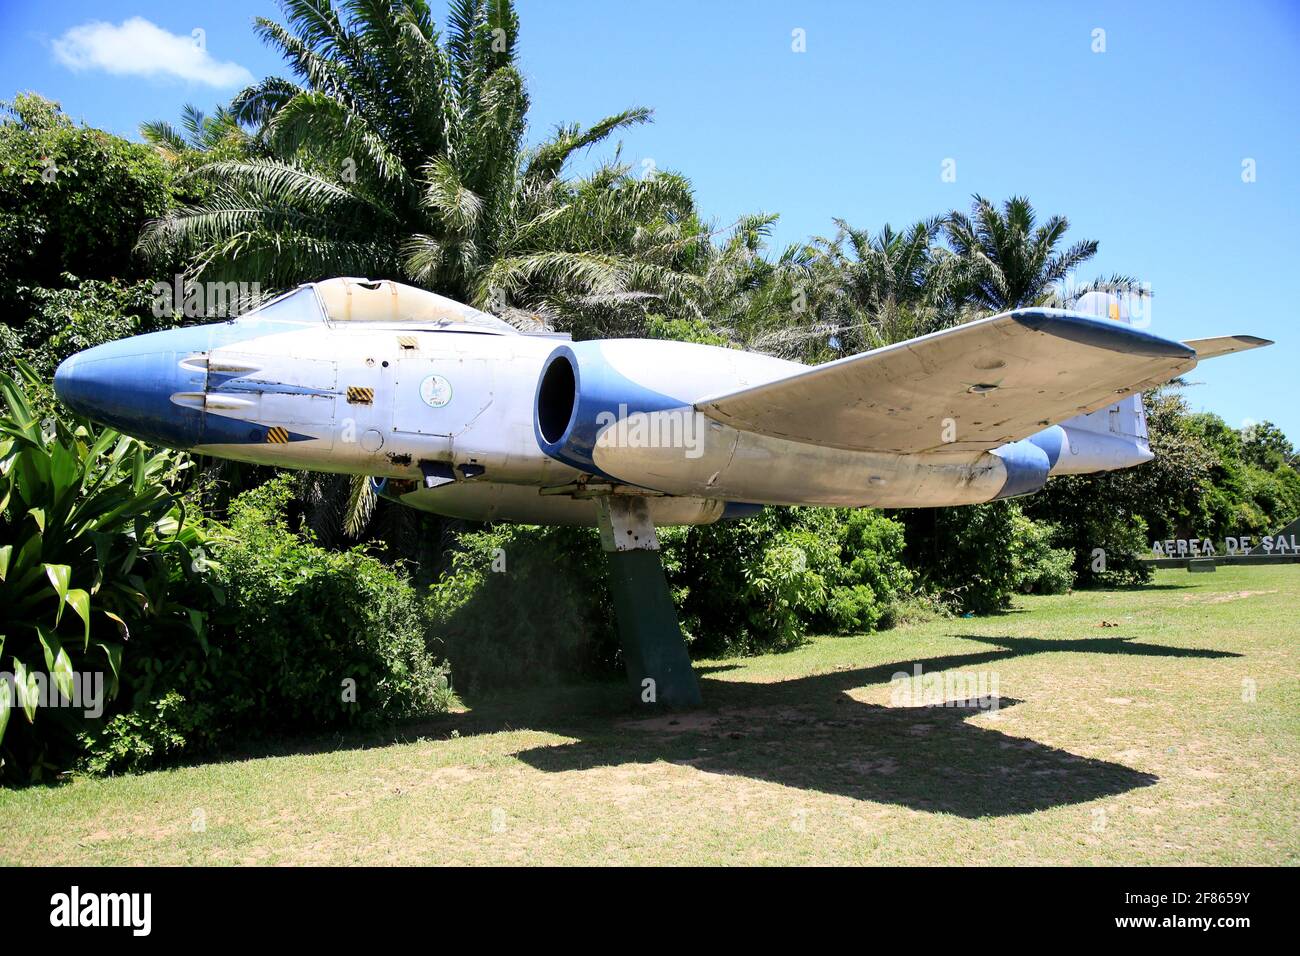 salvador, bahia, brasilien - 18. januar 2021: Gloster Meteor, ein britisch gemachtes Kampfflugzeug, das im zweiten Krieg eingesetzt wurde, ist auf der Salvador Air zu sehen Stockfoto